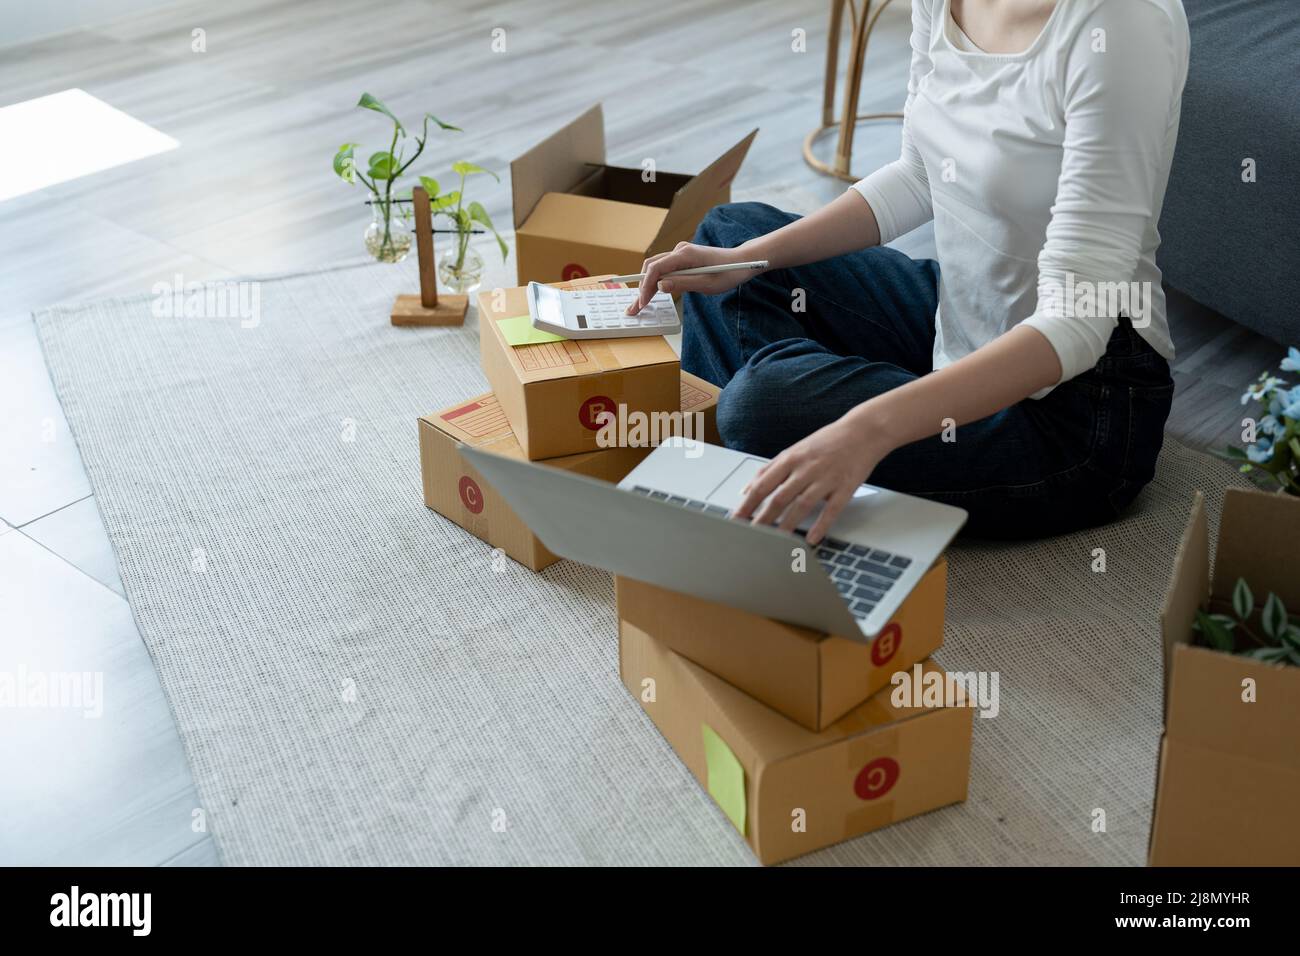 Asiatische Frau Start-up-Kleinunternehmen Eigentümer Verpackung Karton am Arbeitsplatz. Freiberufliche Verkäuferin bereiten Paket-Box des Produkts für zu liefern Stockfoto